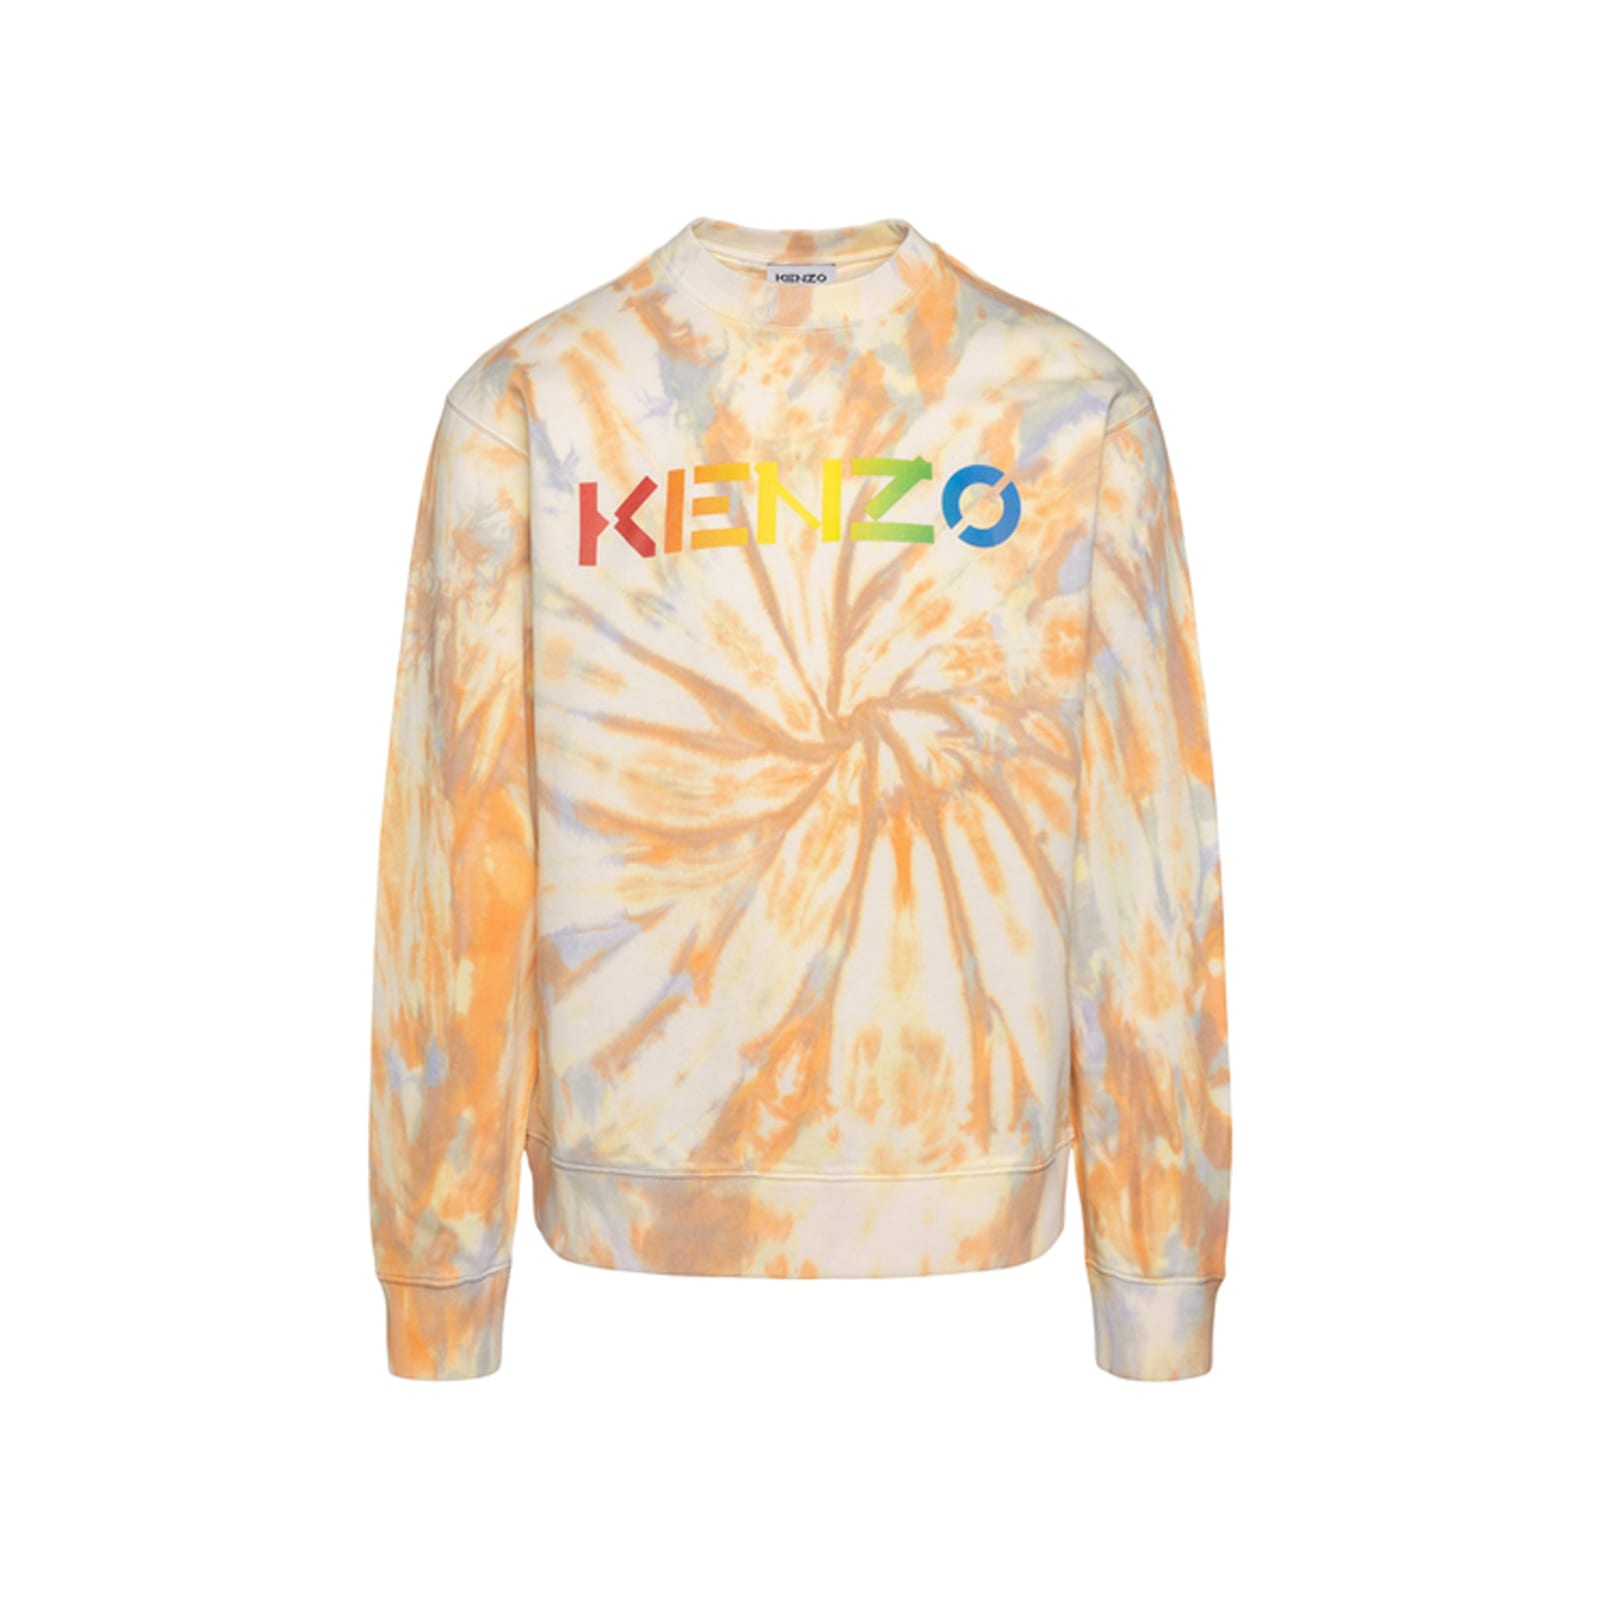 Kenzo Printed Sweatshirt